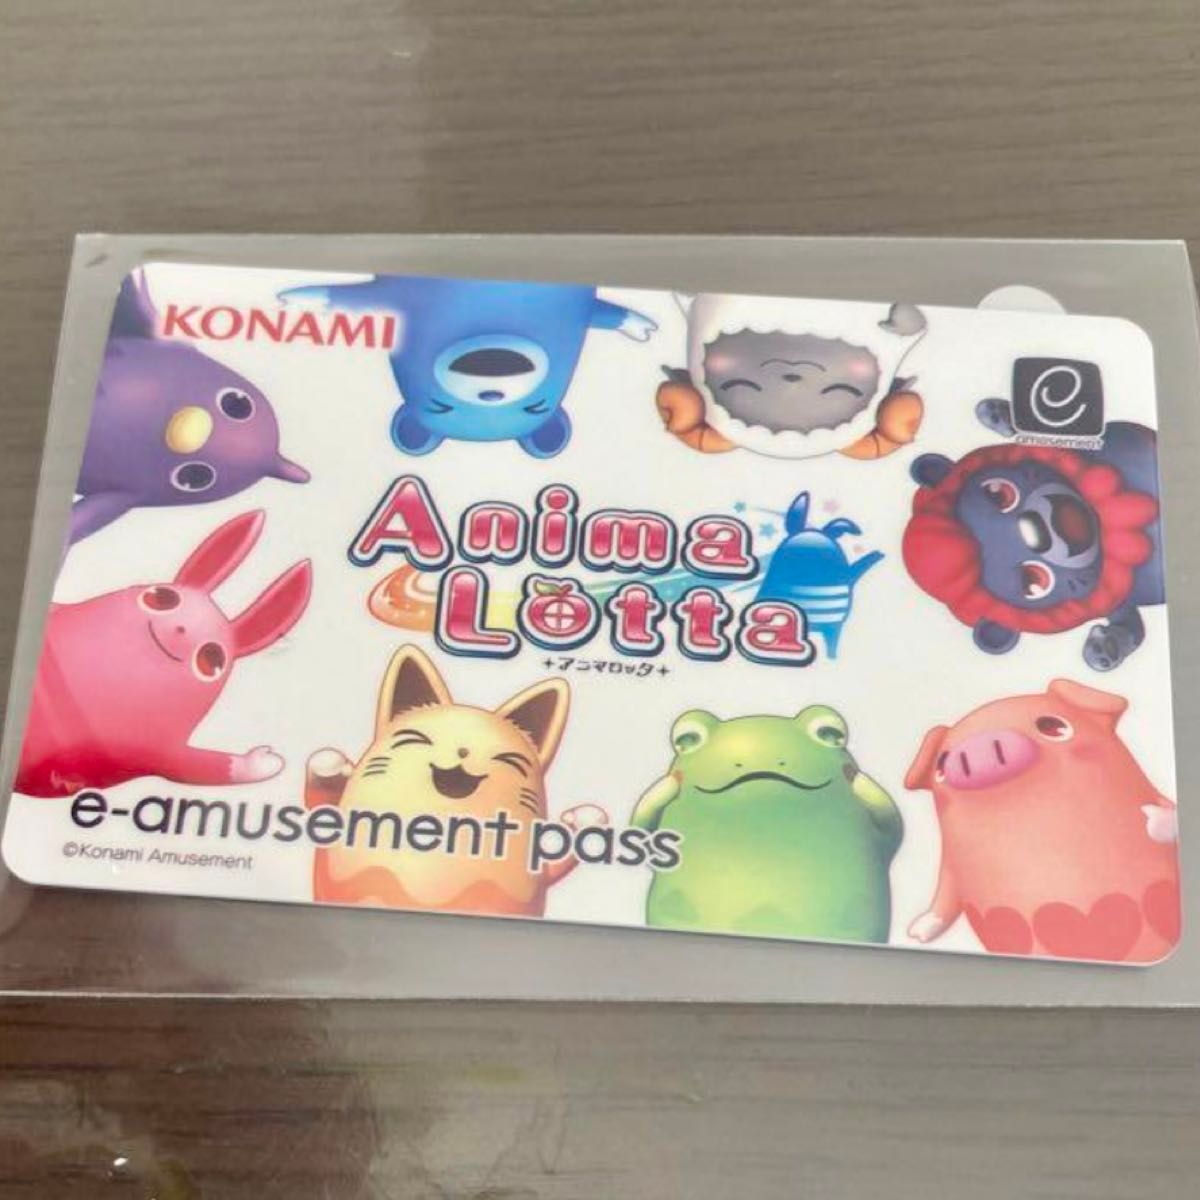 【アニマロッタ1】e-amusement pass メダルゲーム e-pass コナミ eパスカード